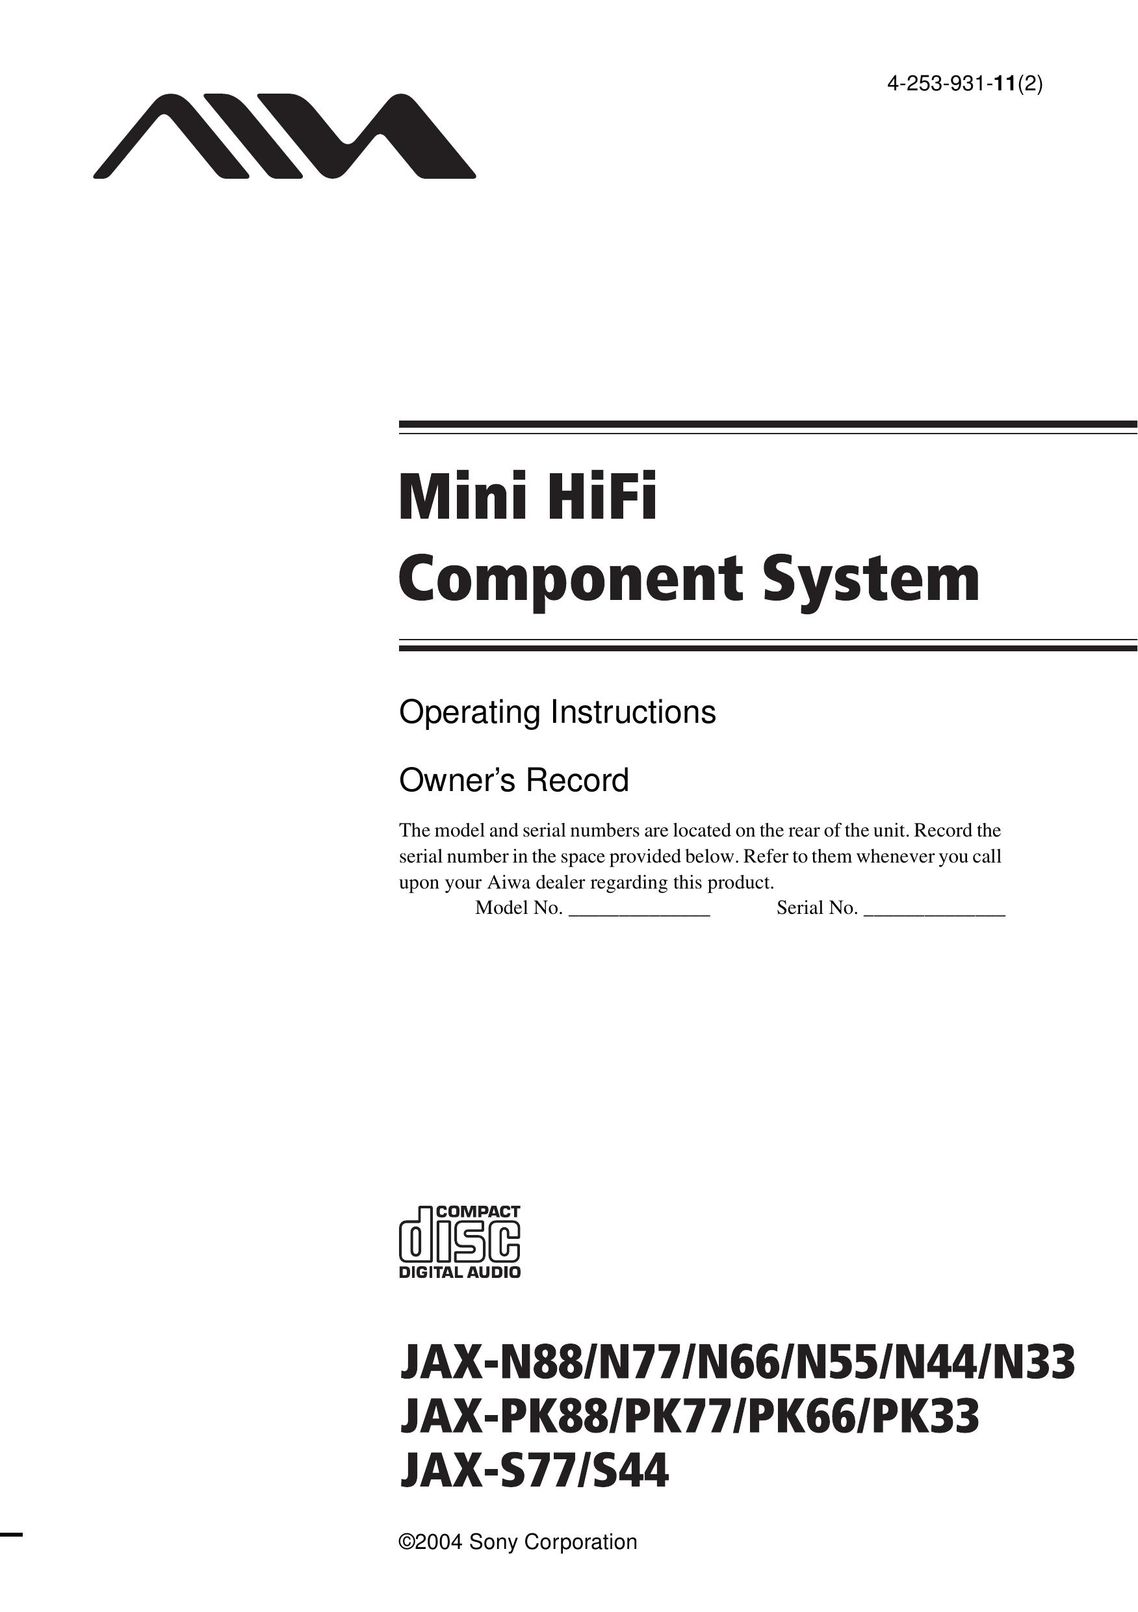 Aiwa JAX-N66 Stereo System User Manual